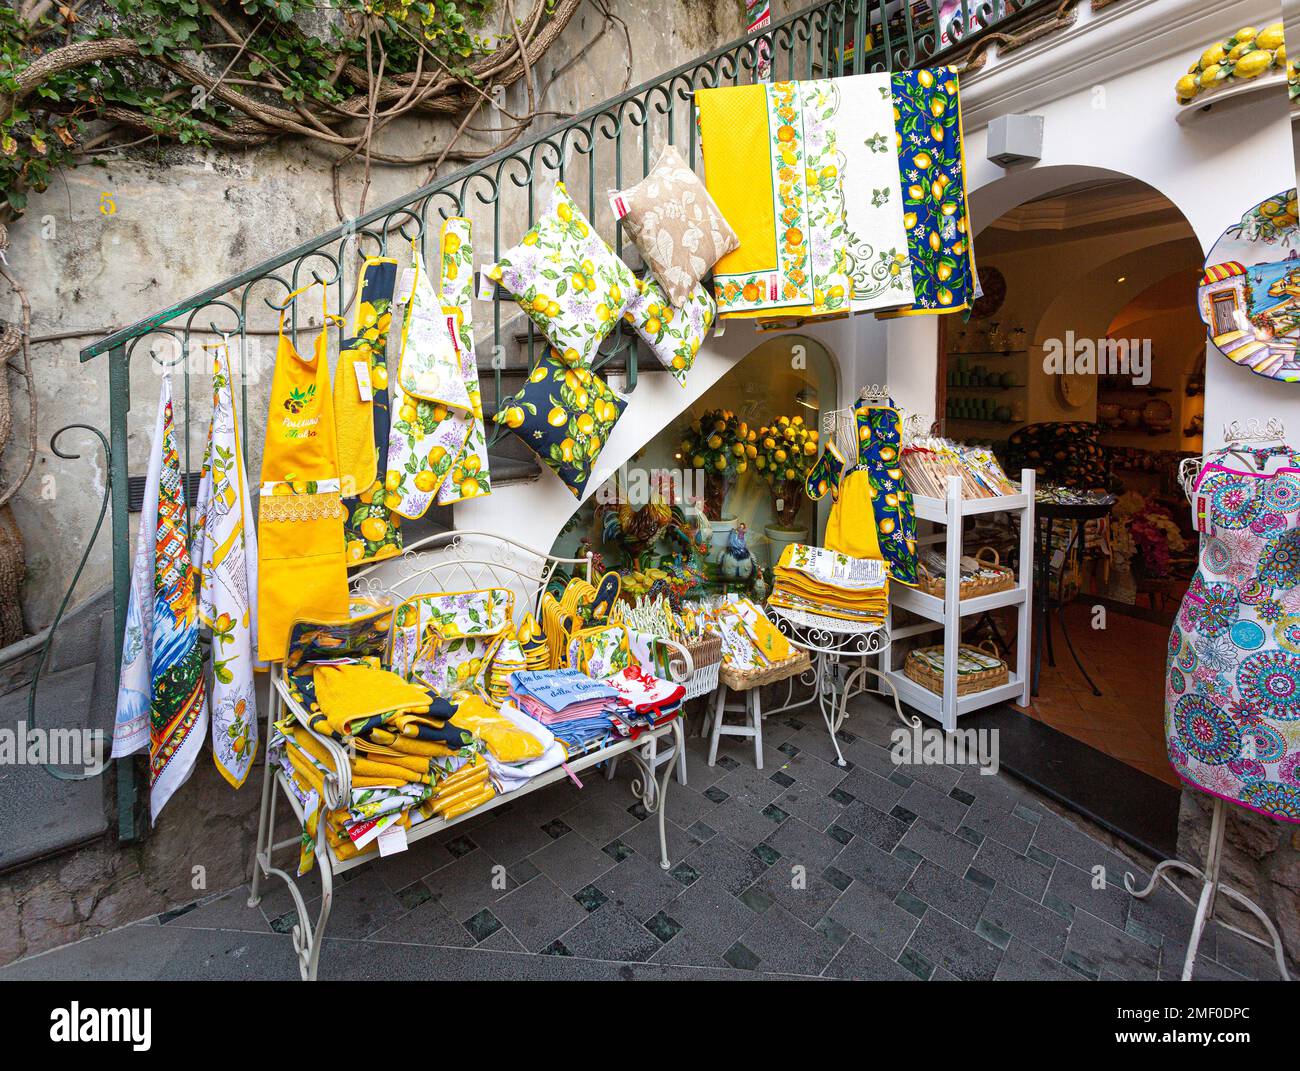 Positano, Italia, 23 aprile 2015: Souvenir locali riccamente decorati con immagini di Limone, che è l'orgoglio locale nel villaggio di Positano provincia di Foto Stock